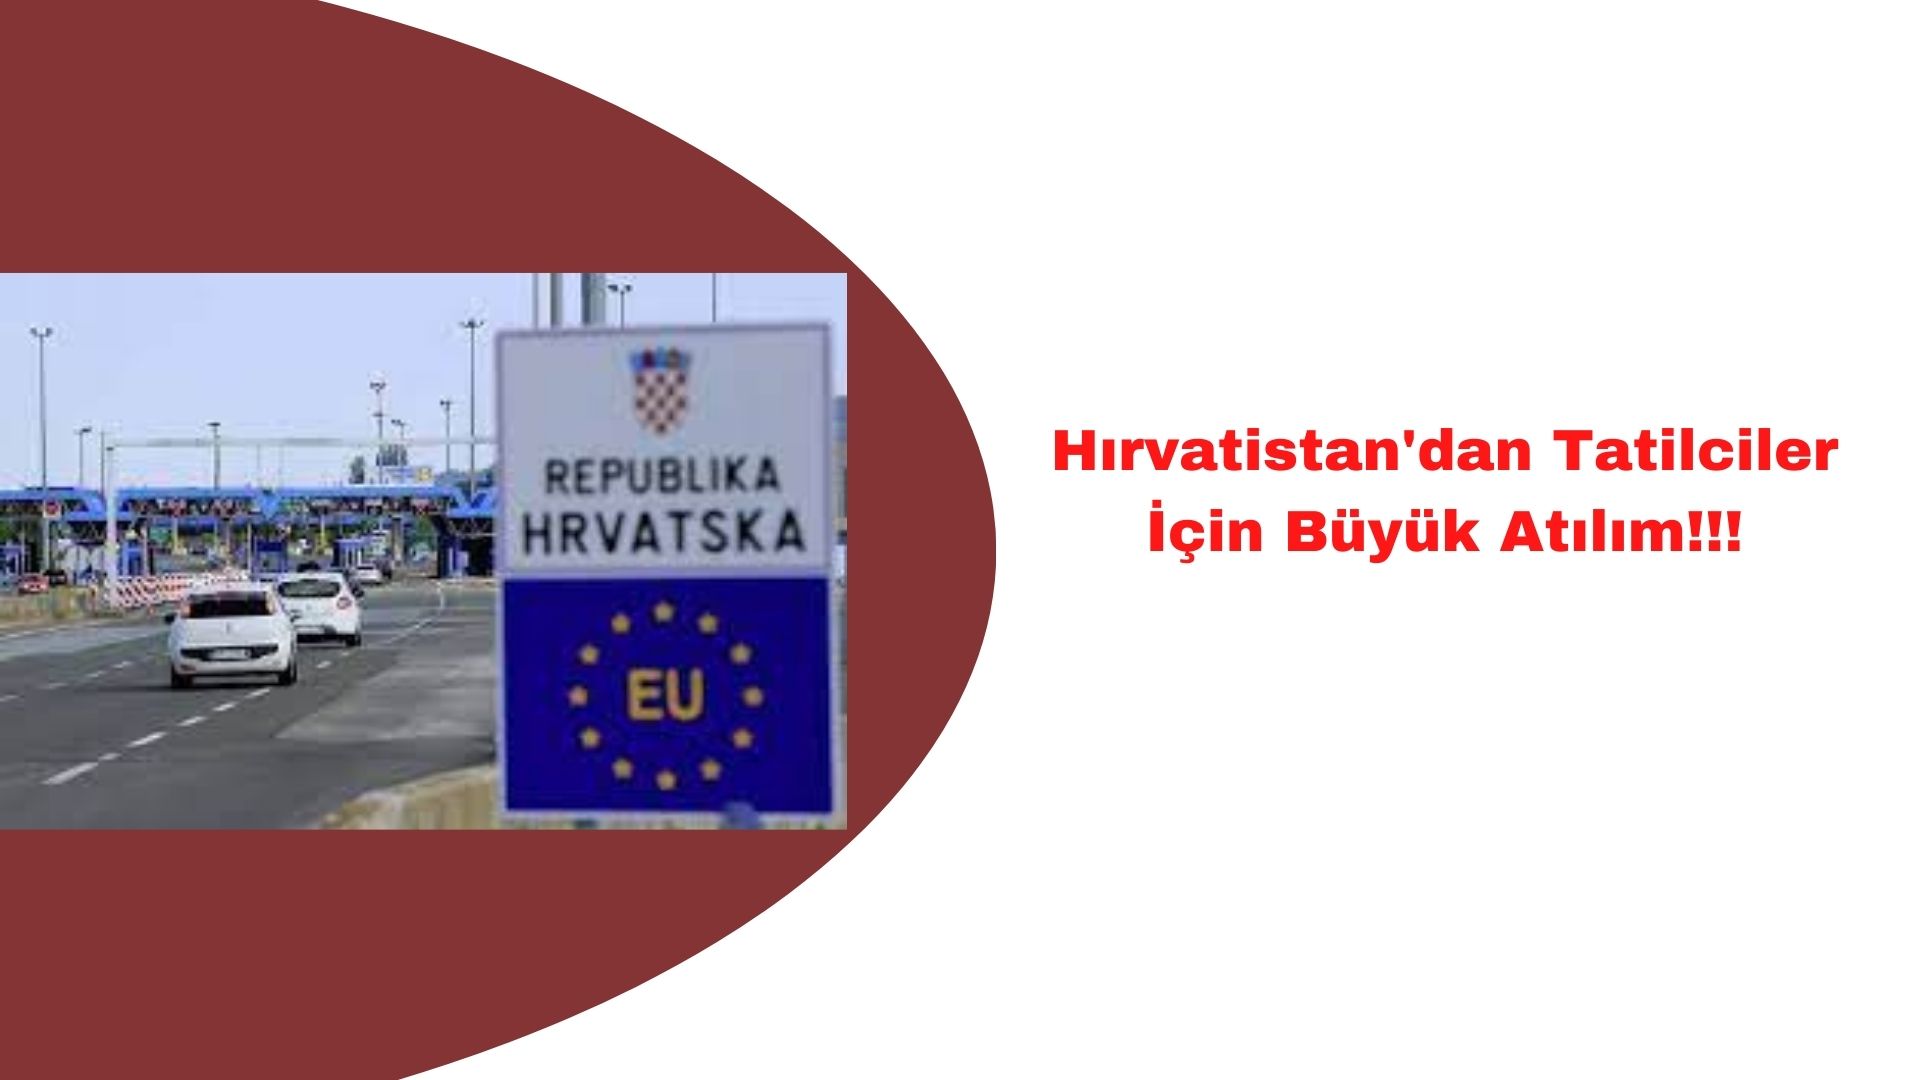 Hırvatistan'dan Tatilciler için Atılım